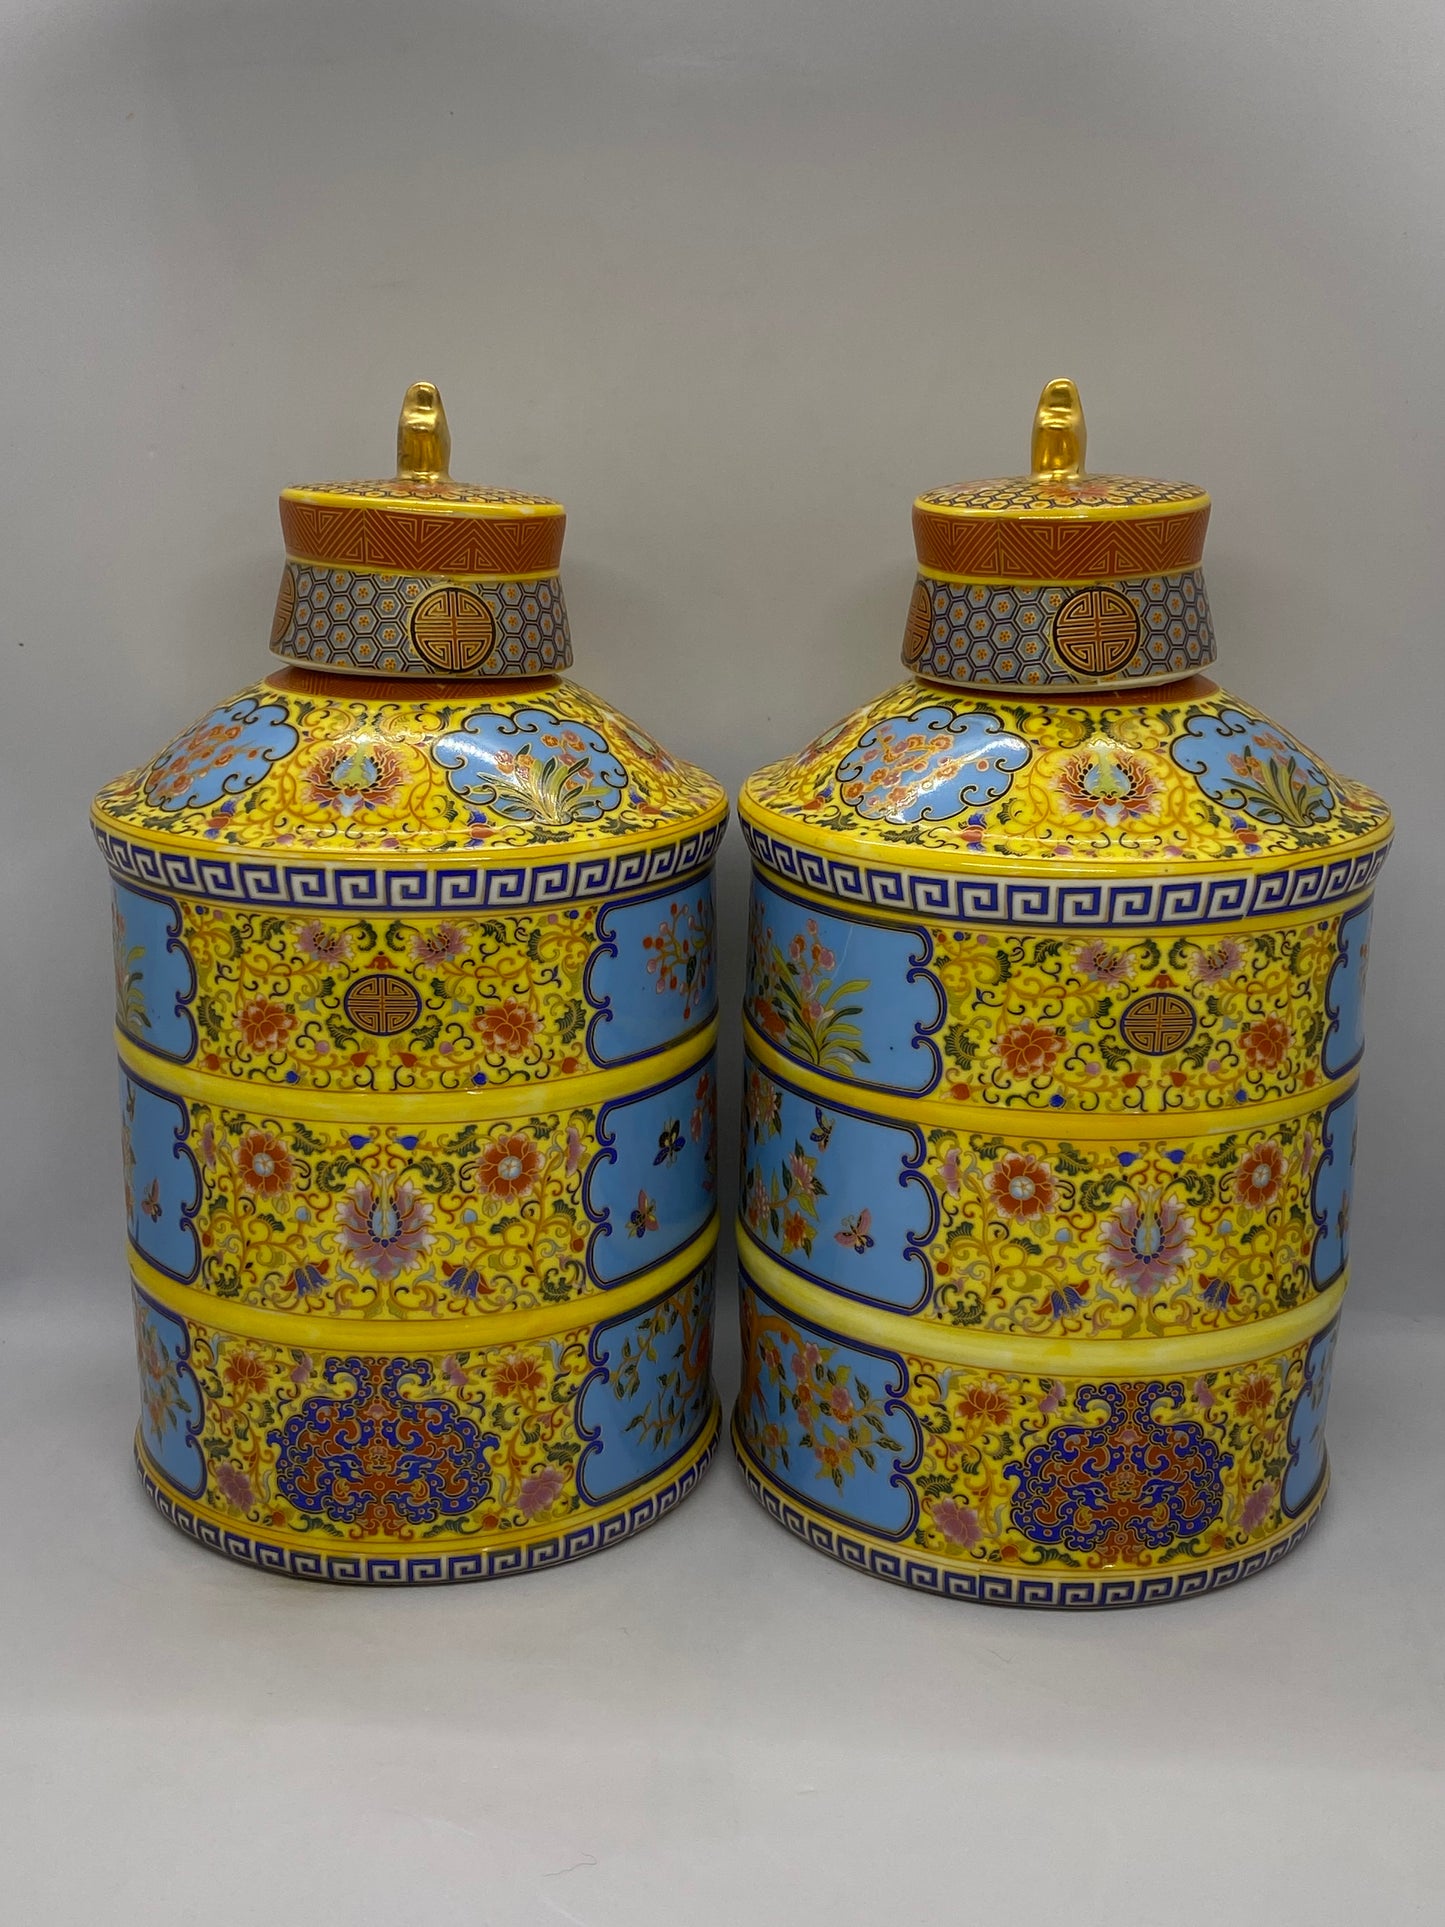 一对二十世纪中国黄蓝彩罐